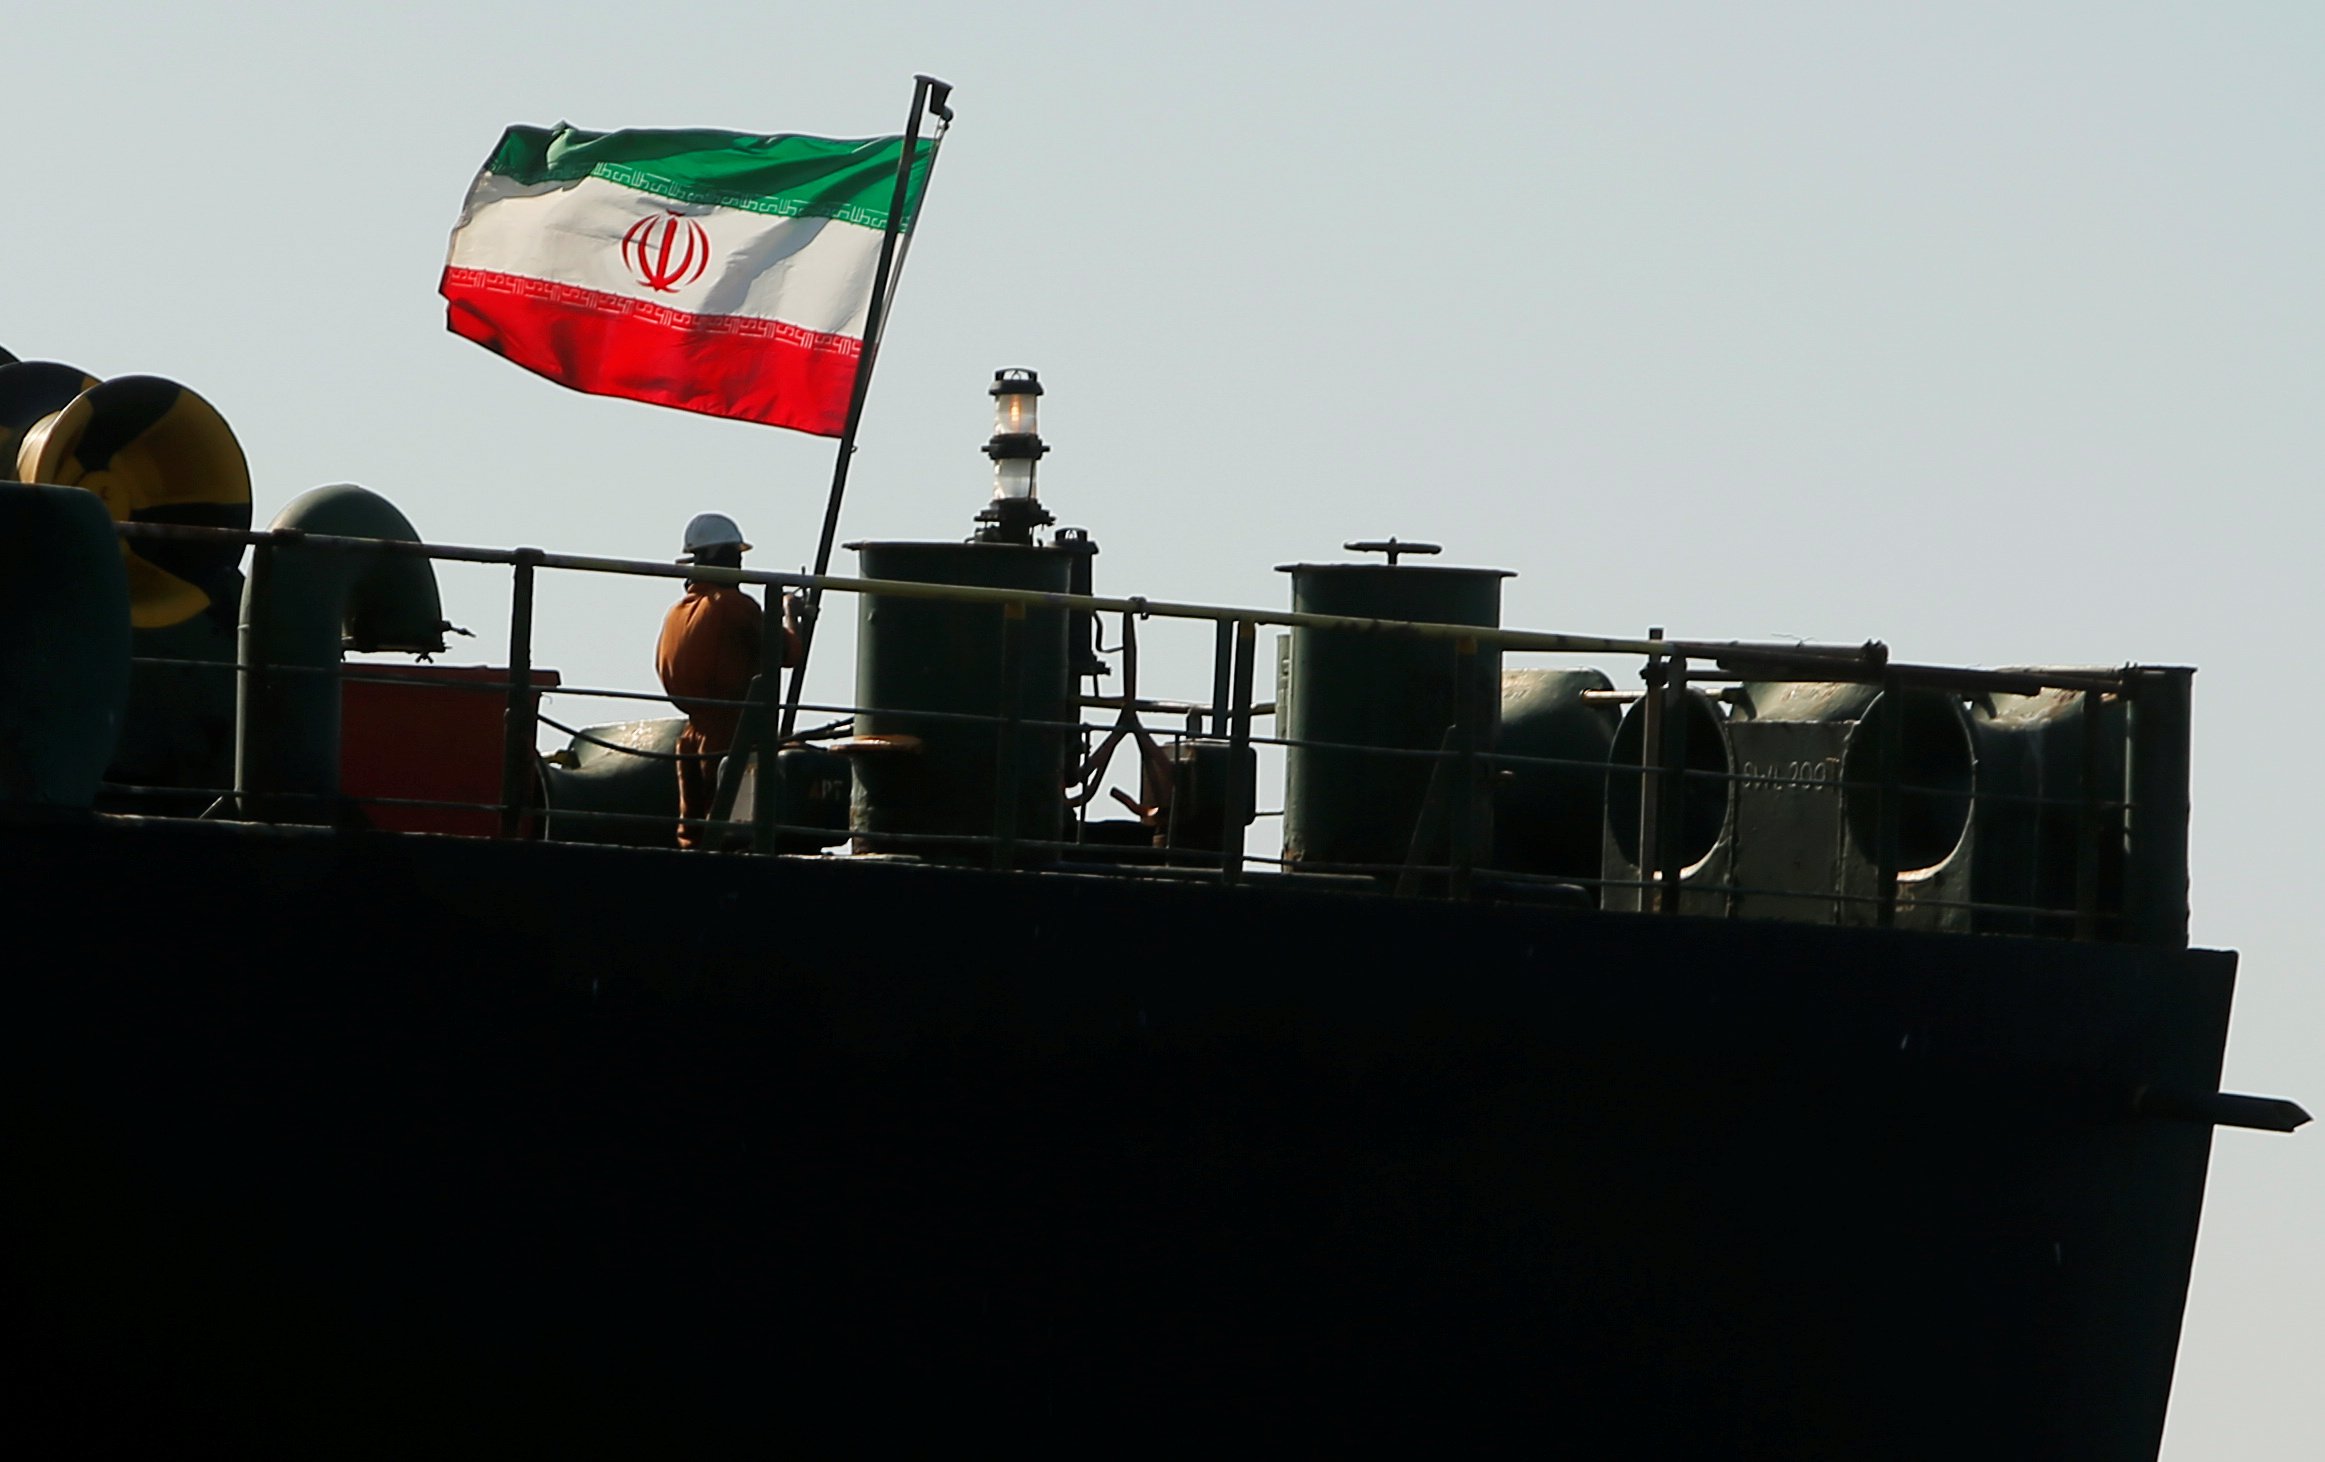 Επιβεβαίωση pronews.gr: Αλλαξε πορεία το ιρανικό δεξαμενόπλοιο Adrian Darya 1 – Δεν θα καταπλεύσει σε ελληνικό λιμάνι